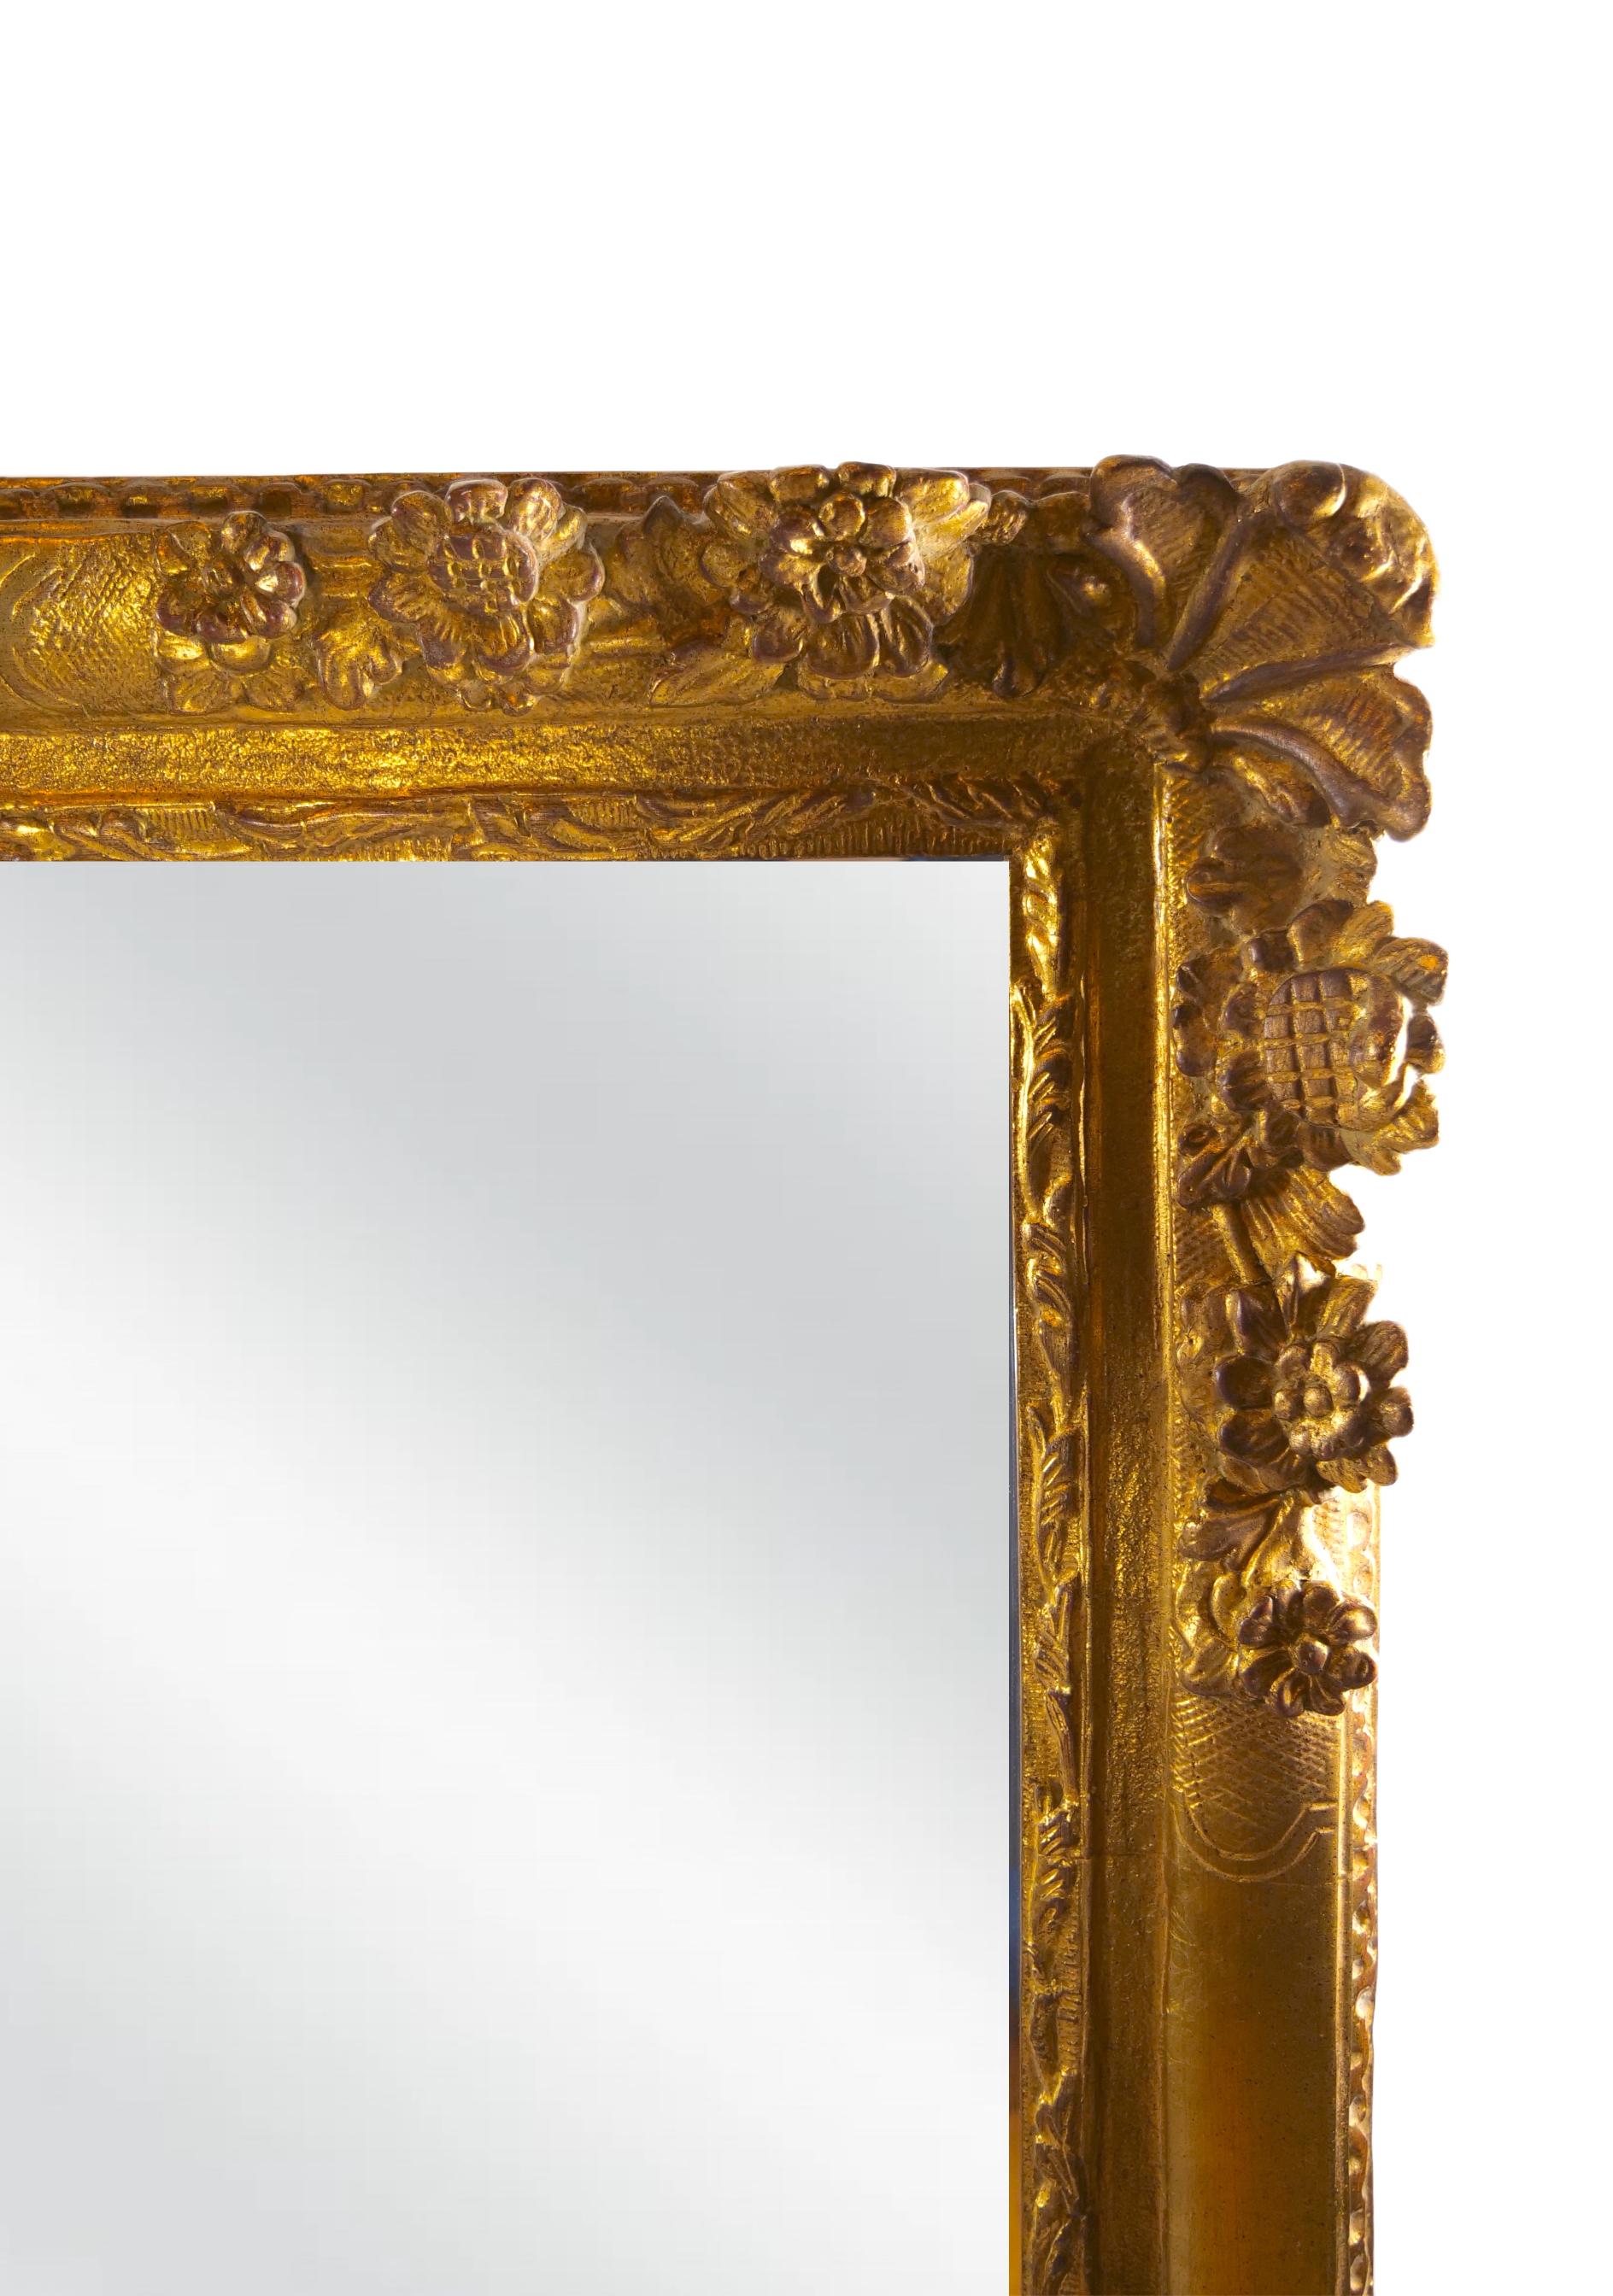 Anfang des 20. Jahrhunderts Louis XVI-Stil sehr großen vergoldeten Holzrahmen abgeschrägten hängenden Wandspiegel mit floralem Design Details. Der Spiegel ist in sehr gutem Zustand. Geringe alters- und gebrauchsbedingte Abnutzung. Es misst 60 Zoll